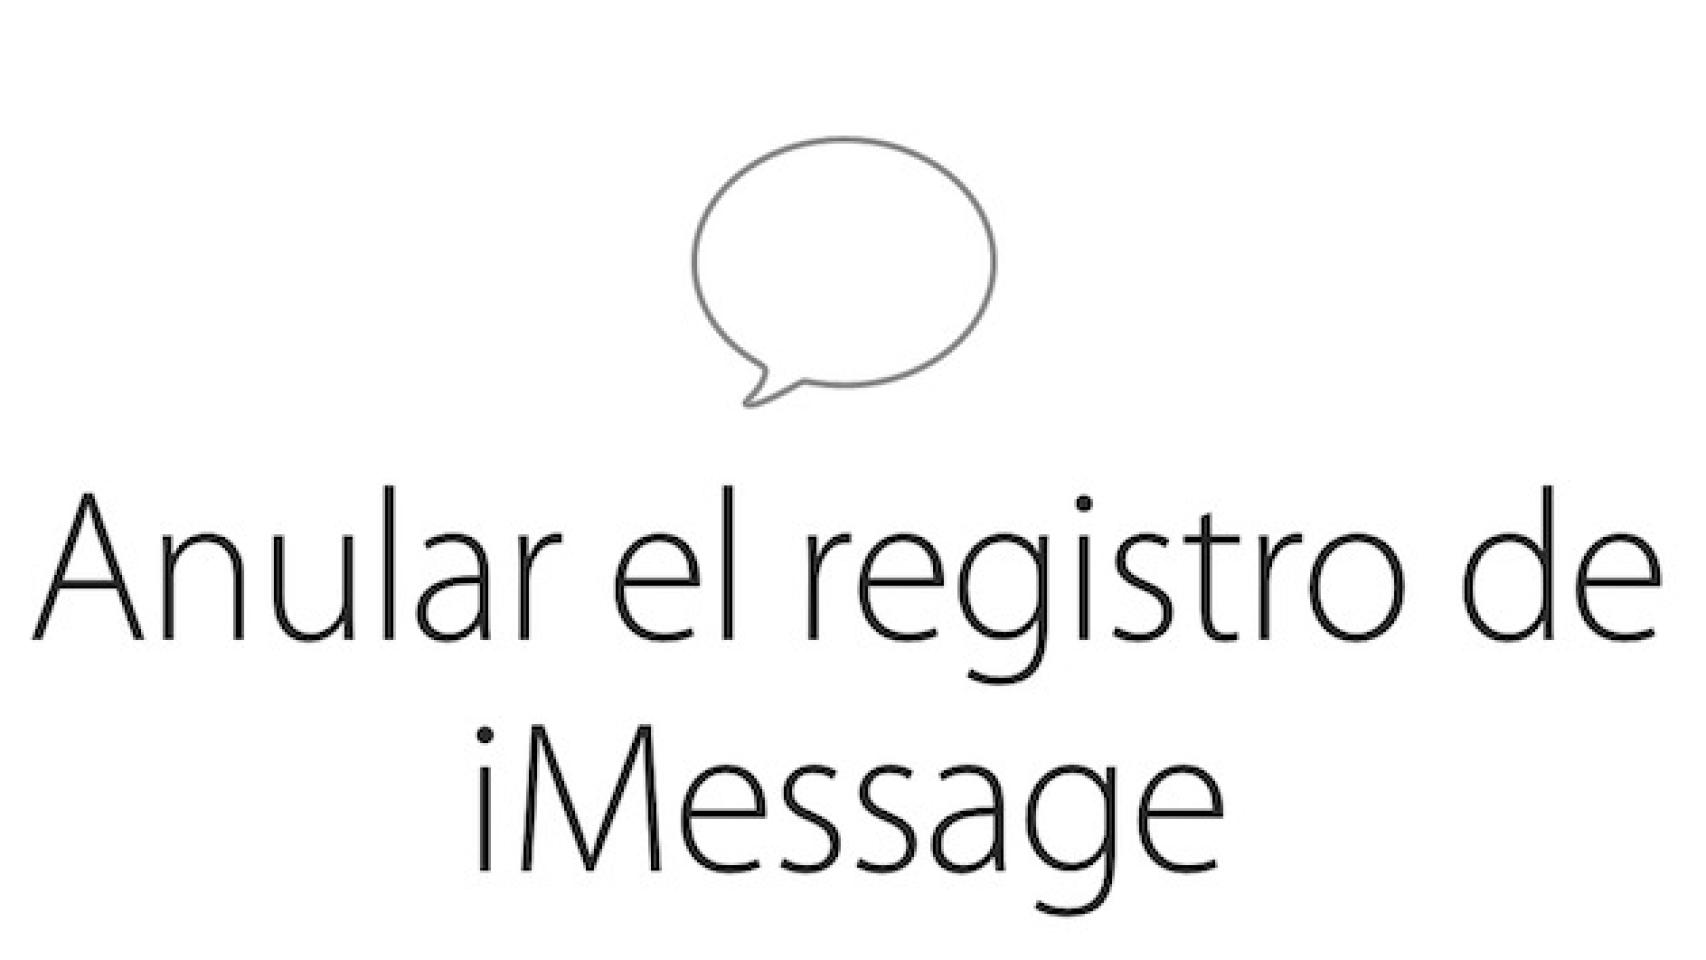 Apple ya permite recuperar los SMS de iMessage desde Android